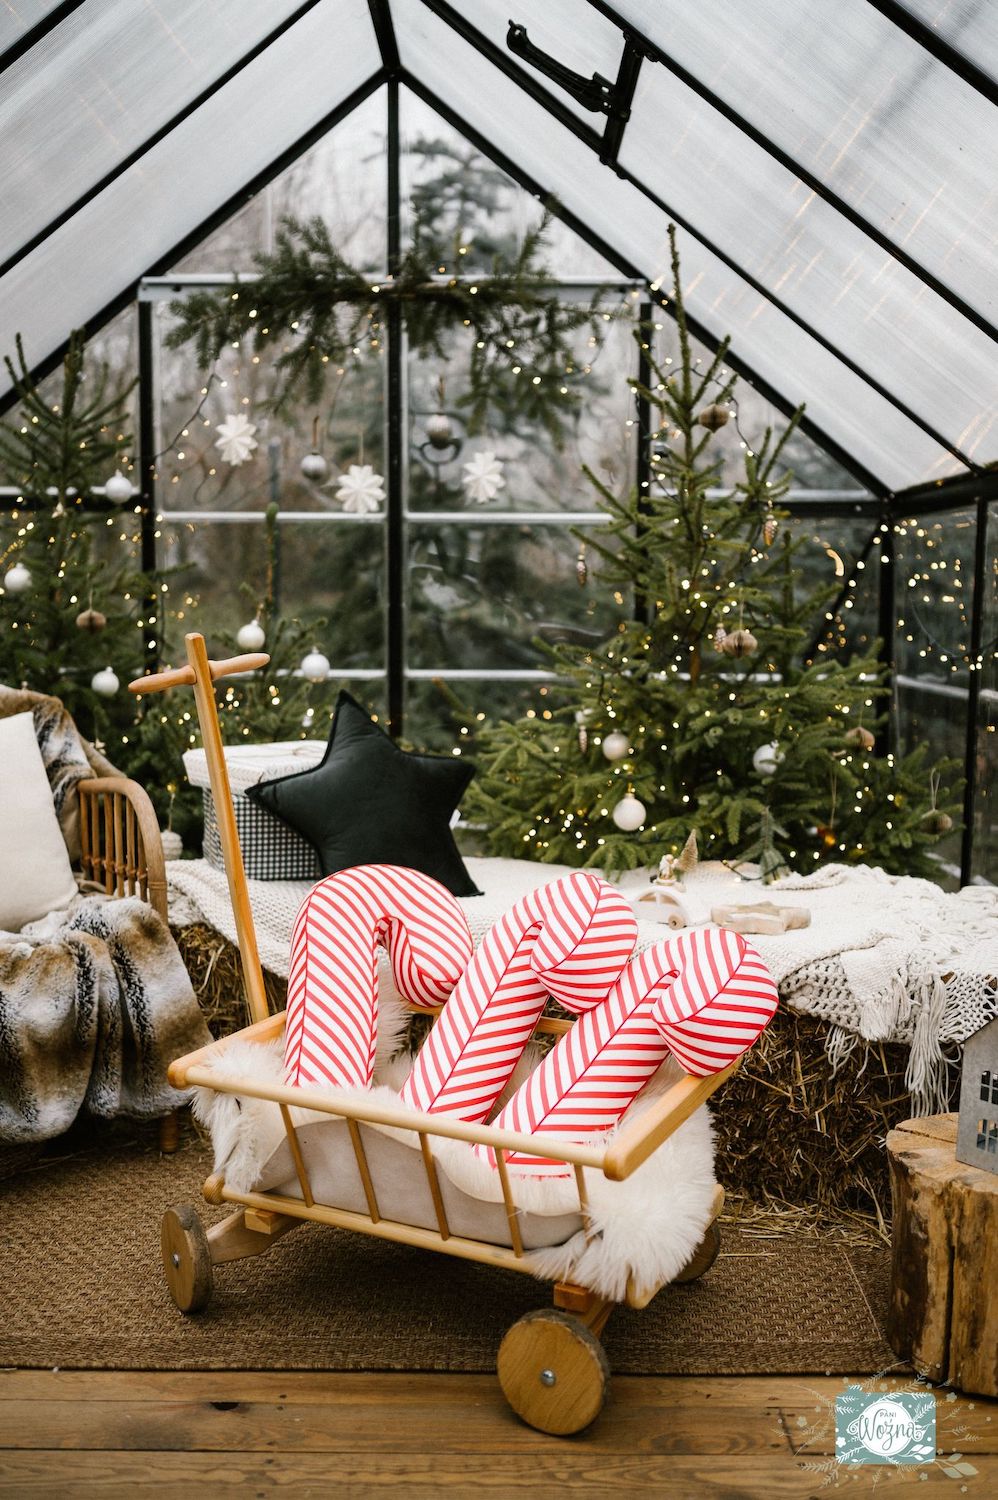 świąteczna poduszka laska w biało czerwone paski od Bettys Home w dekoracyjnym wózku w szklarni